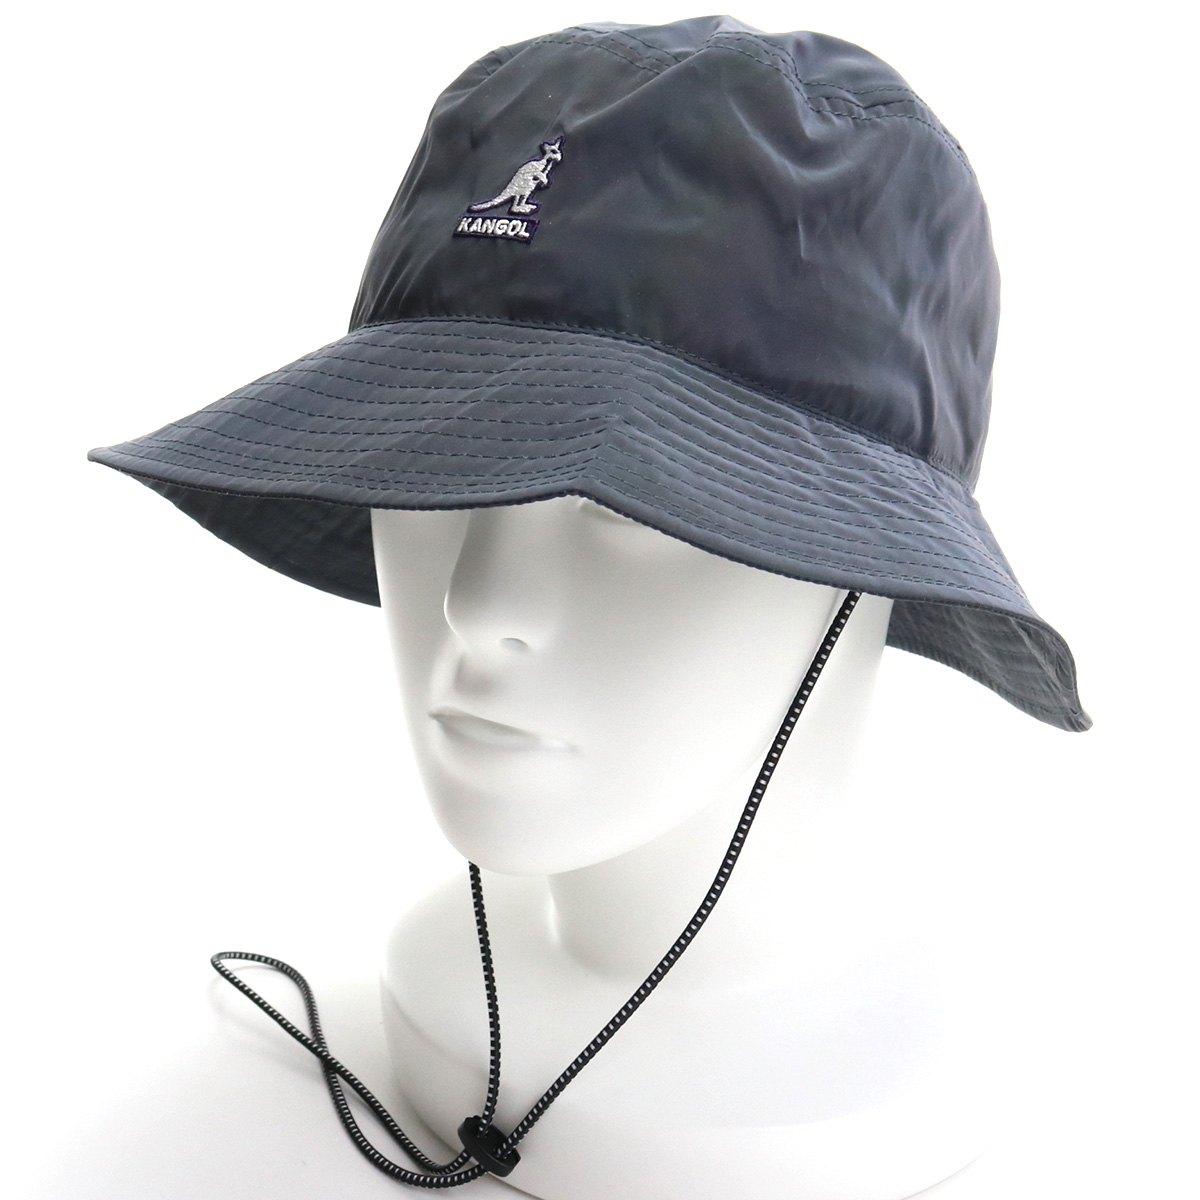 ※ 送料無料 ラッピング無料 カンゴール KANGOL メンズ－帽子類 ブランドロゴ cap-01 INK K5298 IN005 割り引き グレー系 ブランド帽子 品質は非常に良い